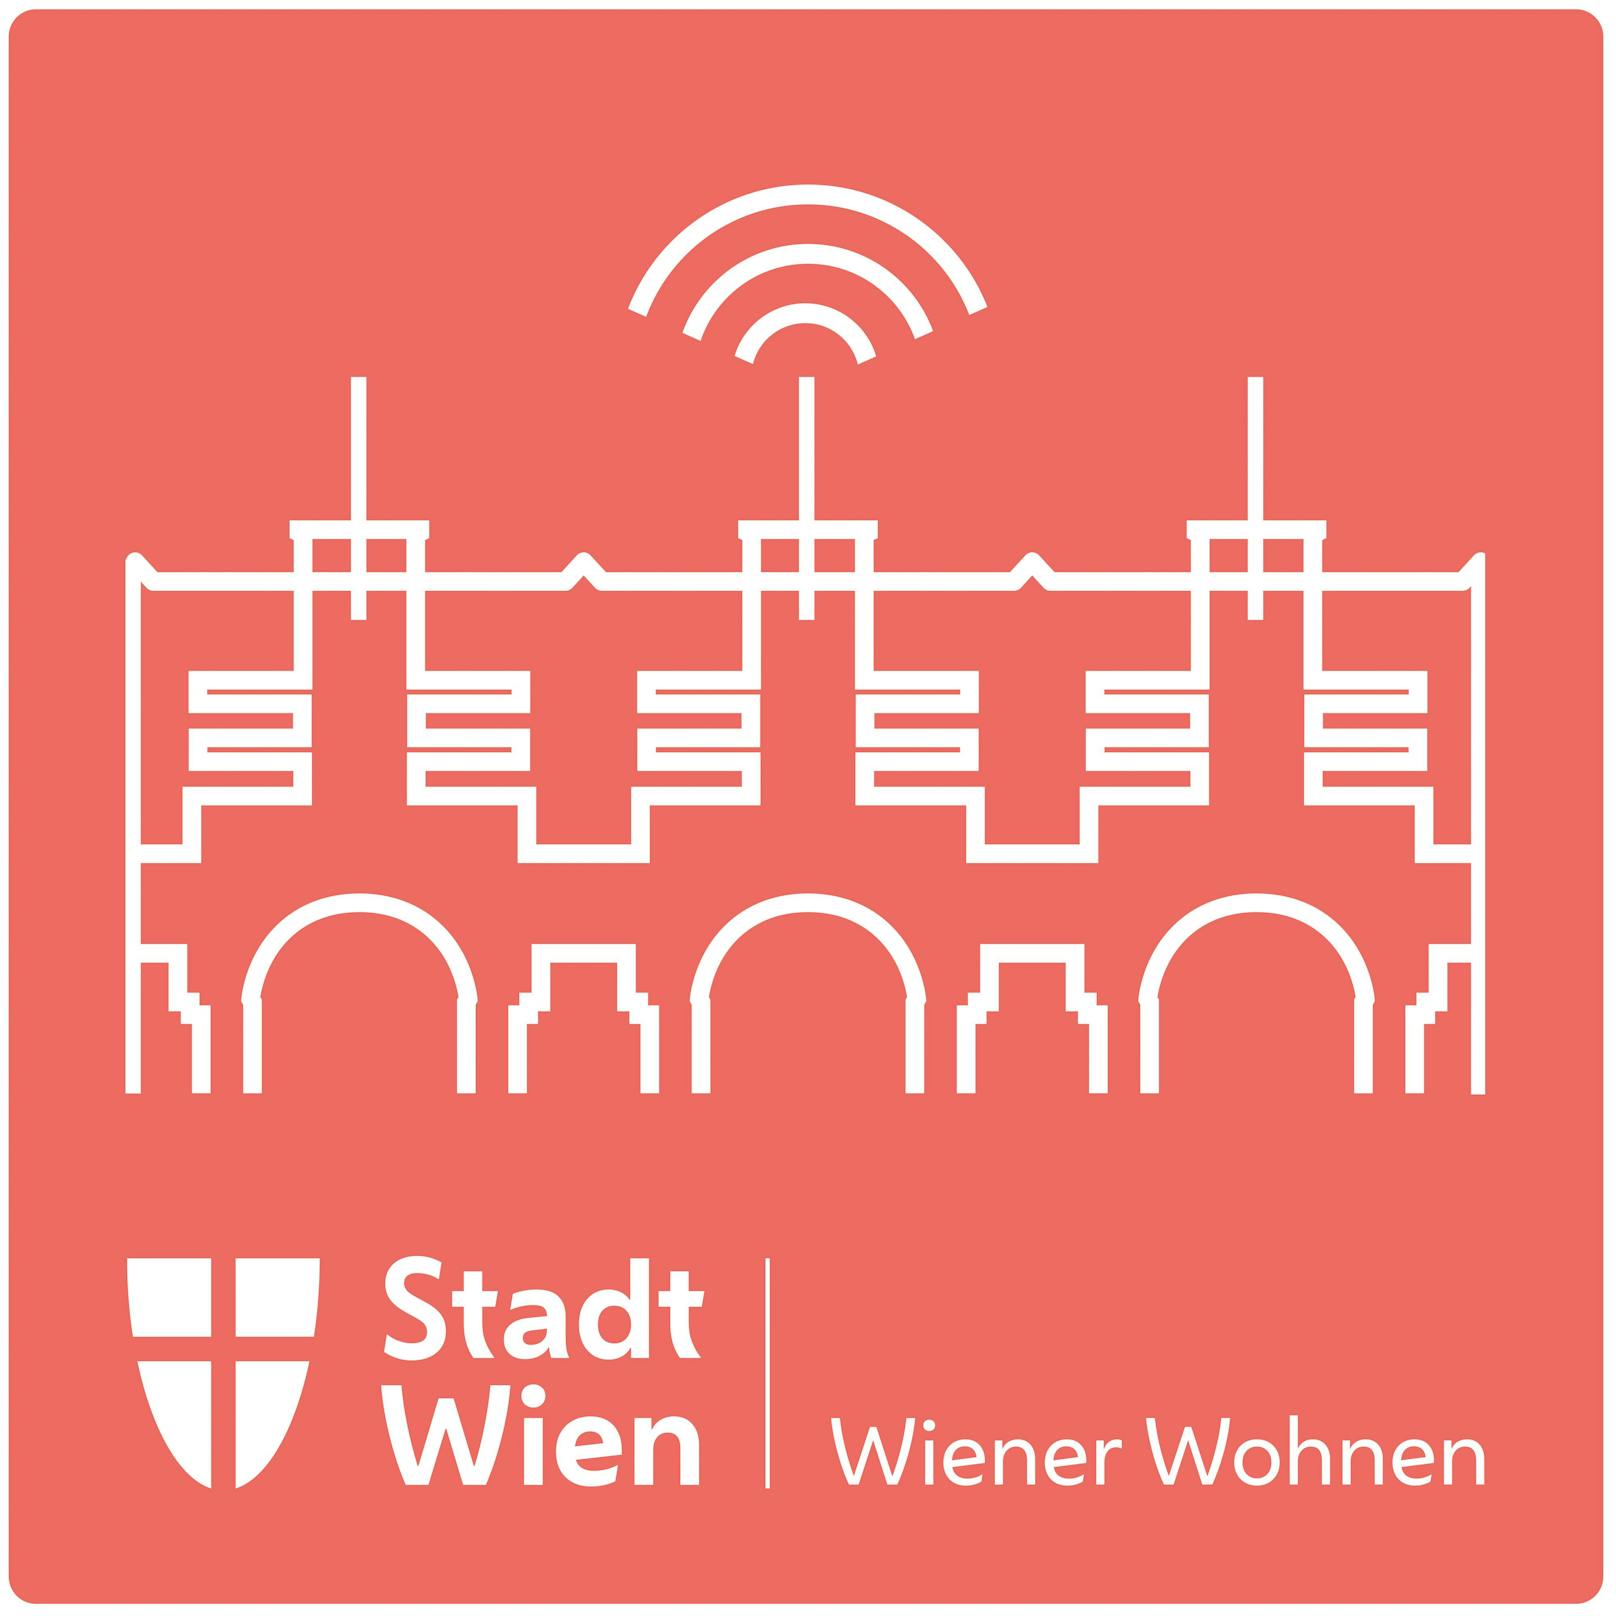 Unter wienerwohnenpodcast.buzzsprout.com gibt's jetzt den Podcast von Wiener Wohnen.